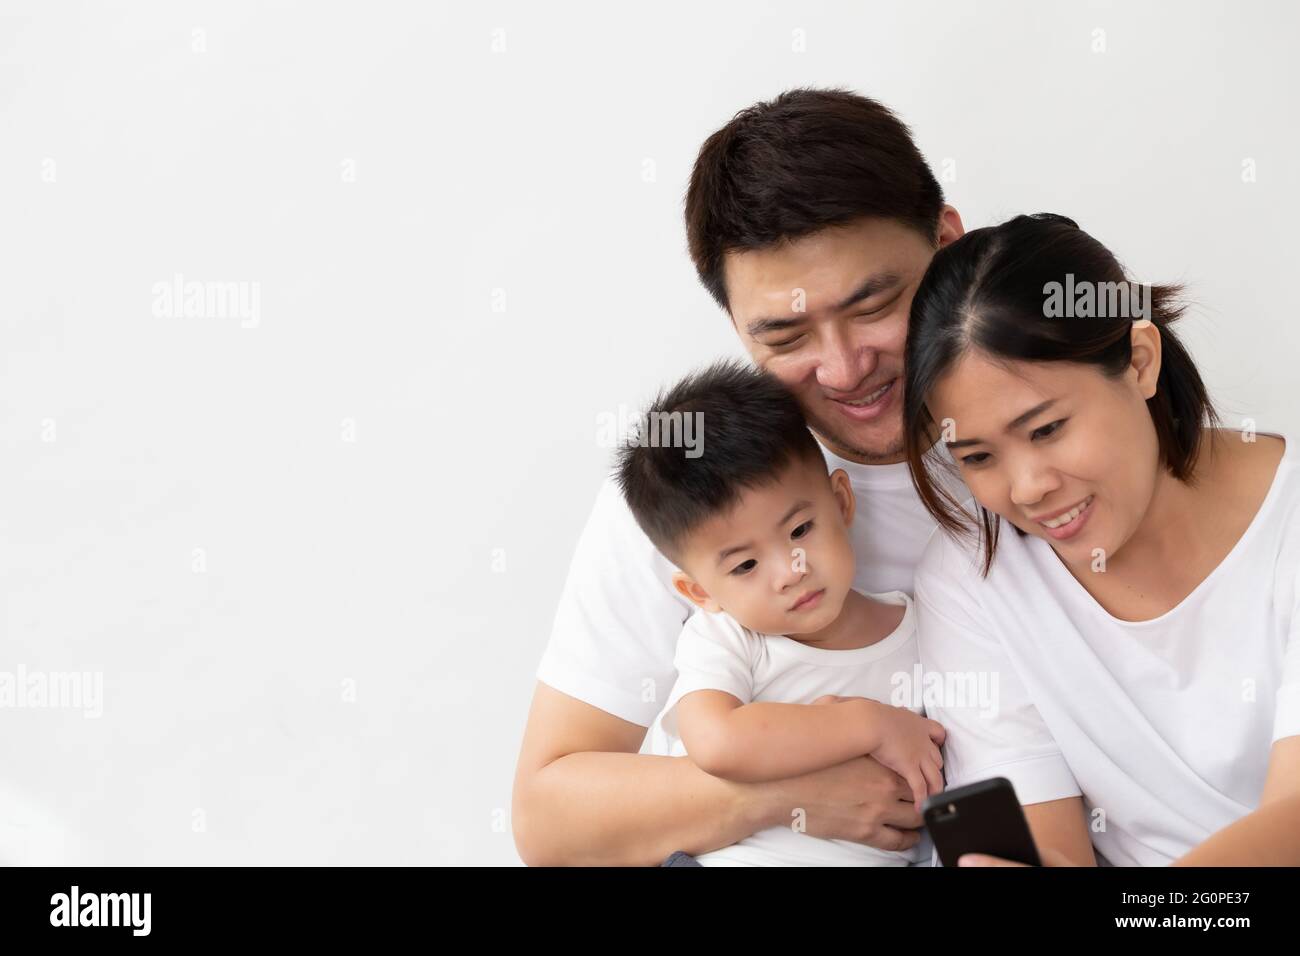 Fröhliche junge asiatische Familie mit Sohn lachen beim Betrachten von lustigen Videos auf dem Smartphone, Eltern mit Kindern spielen gerne Spiele oder unterhalten sich mit Mobi Stockfoto